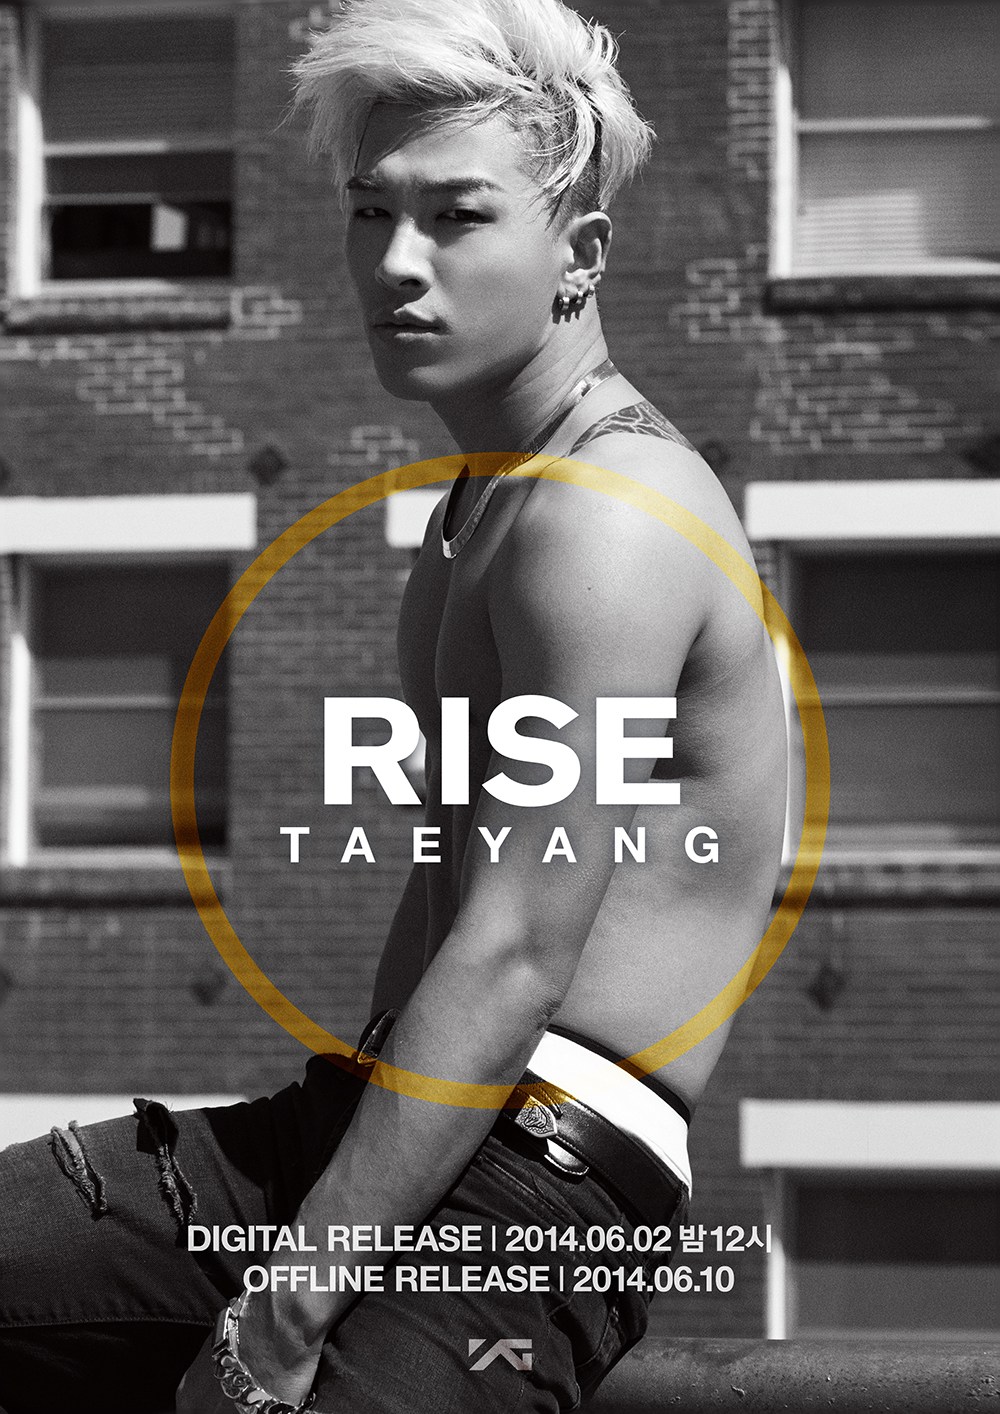 Taeyang – Solar, Rise, White Night